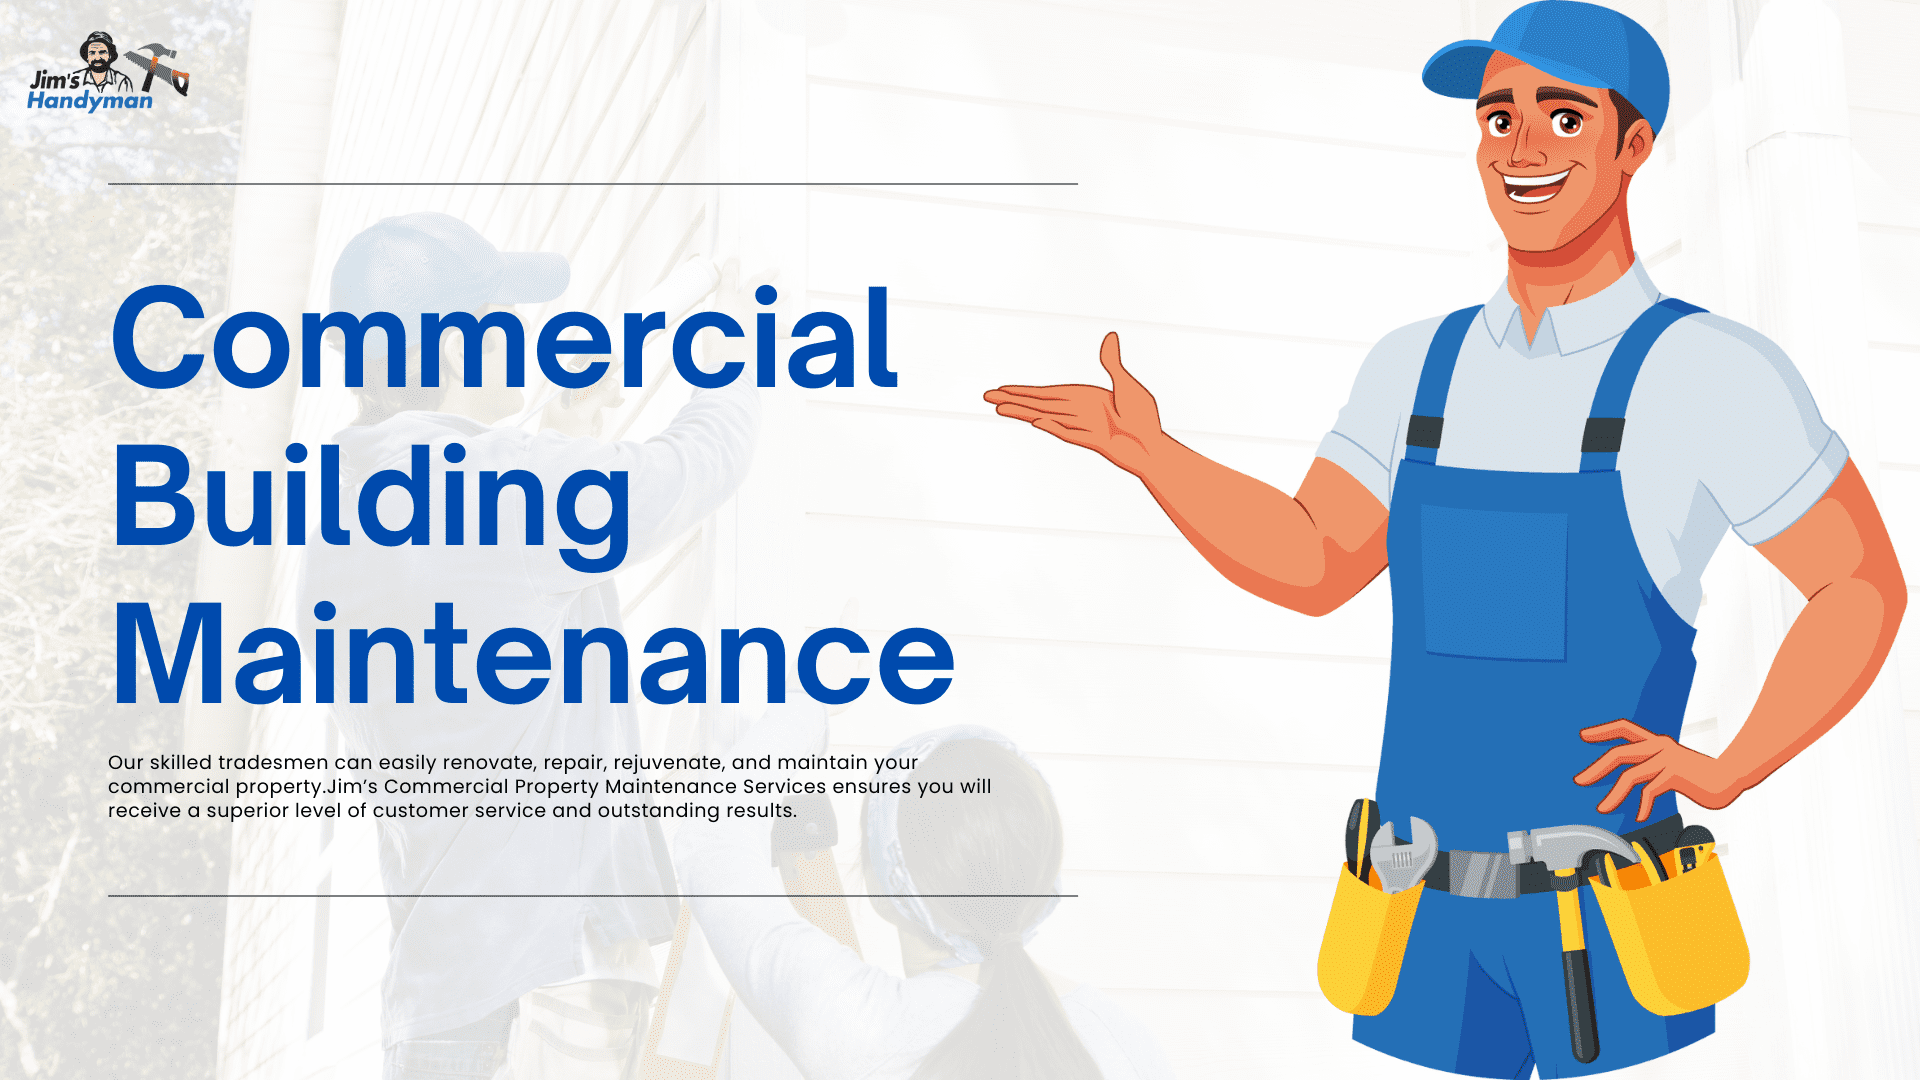 Commercial Building Maintenance | Jim's Handyman - Melbourne Maintenance, Repair